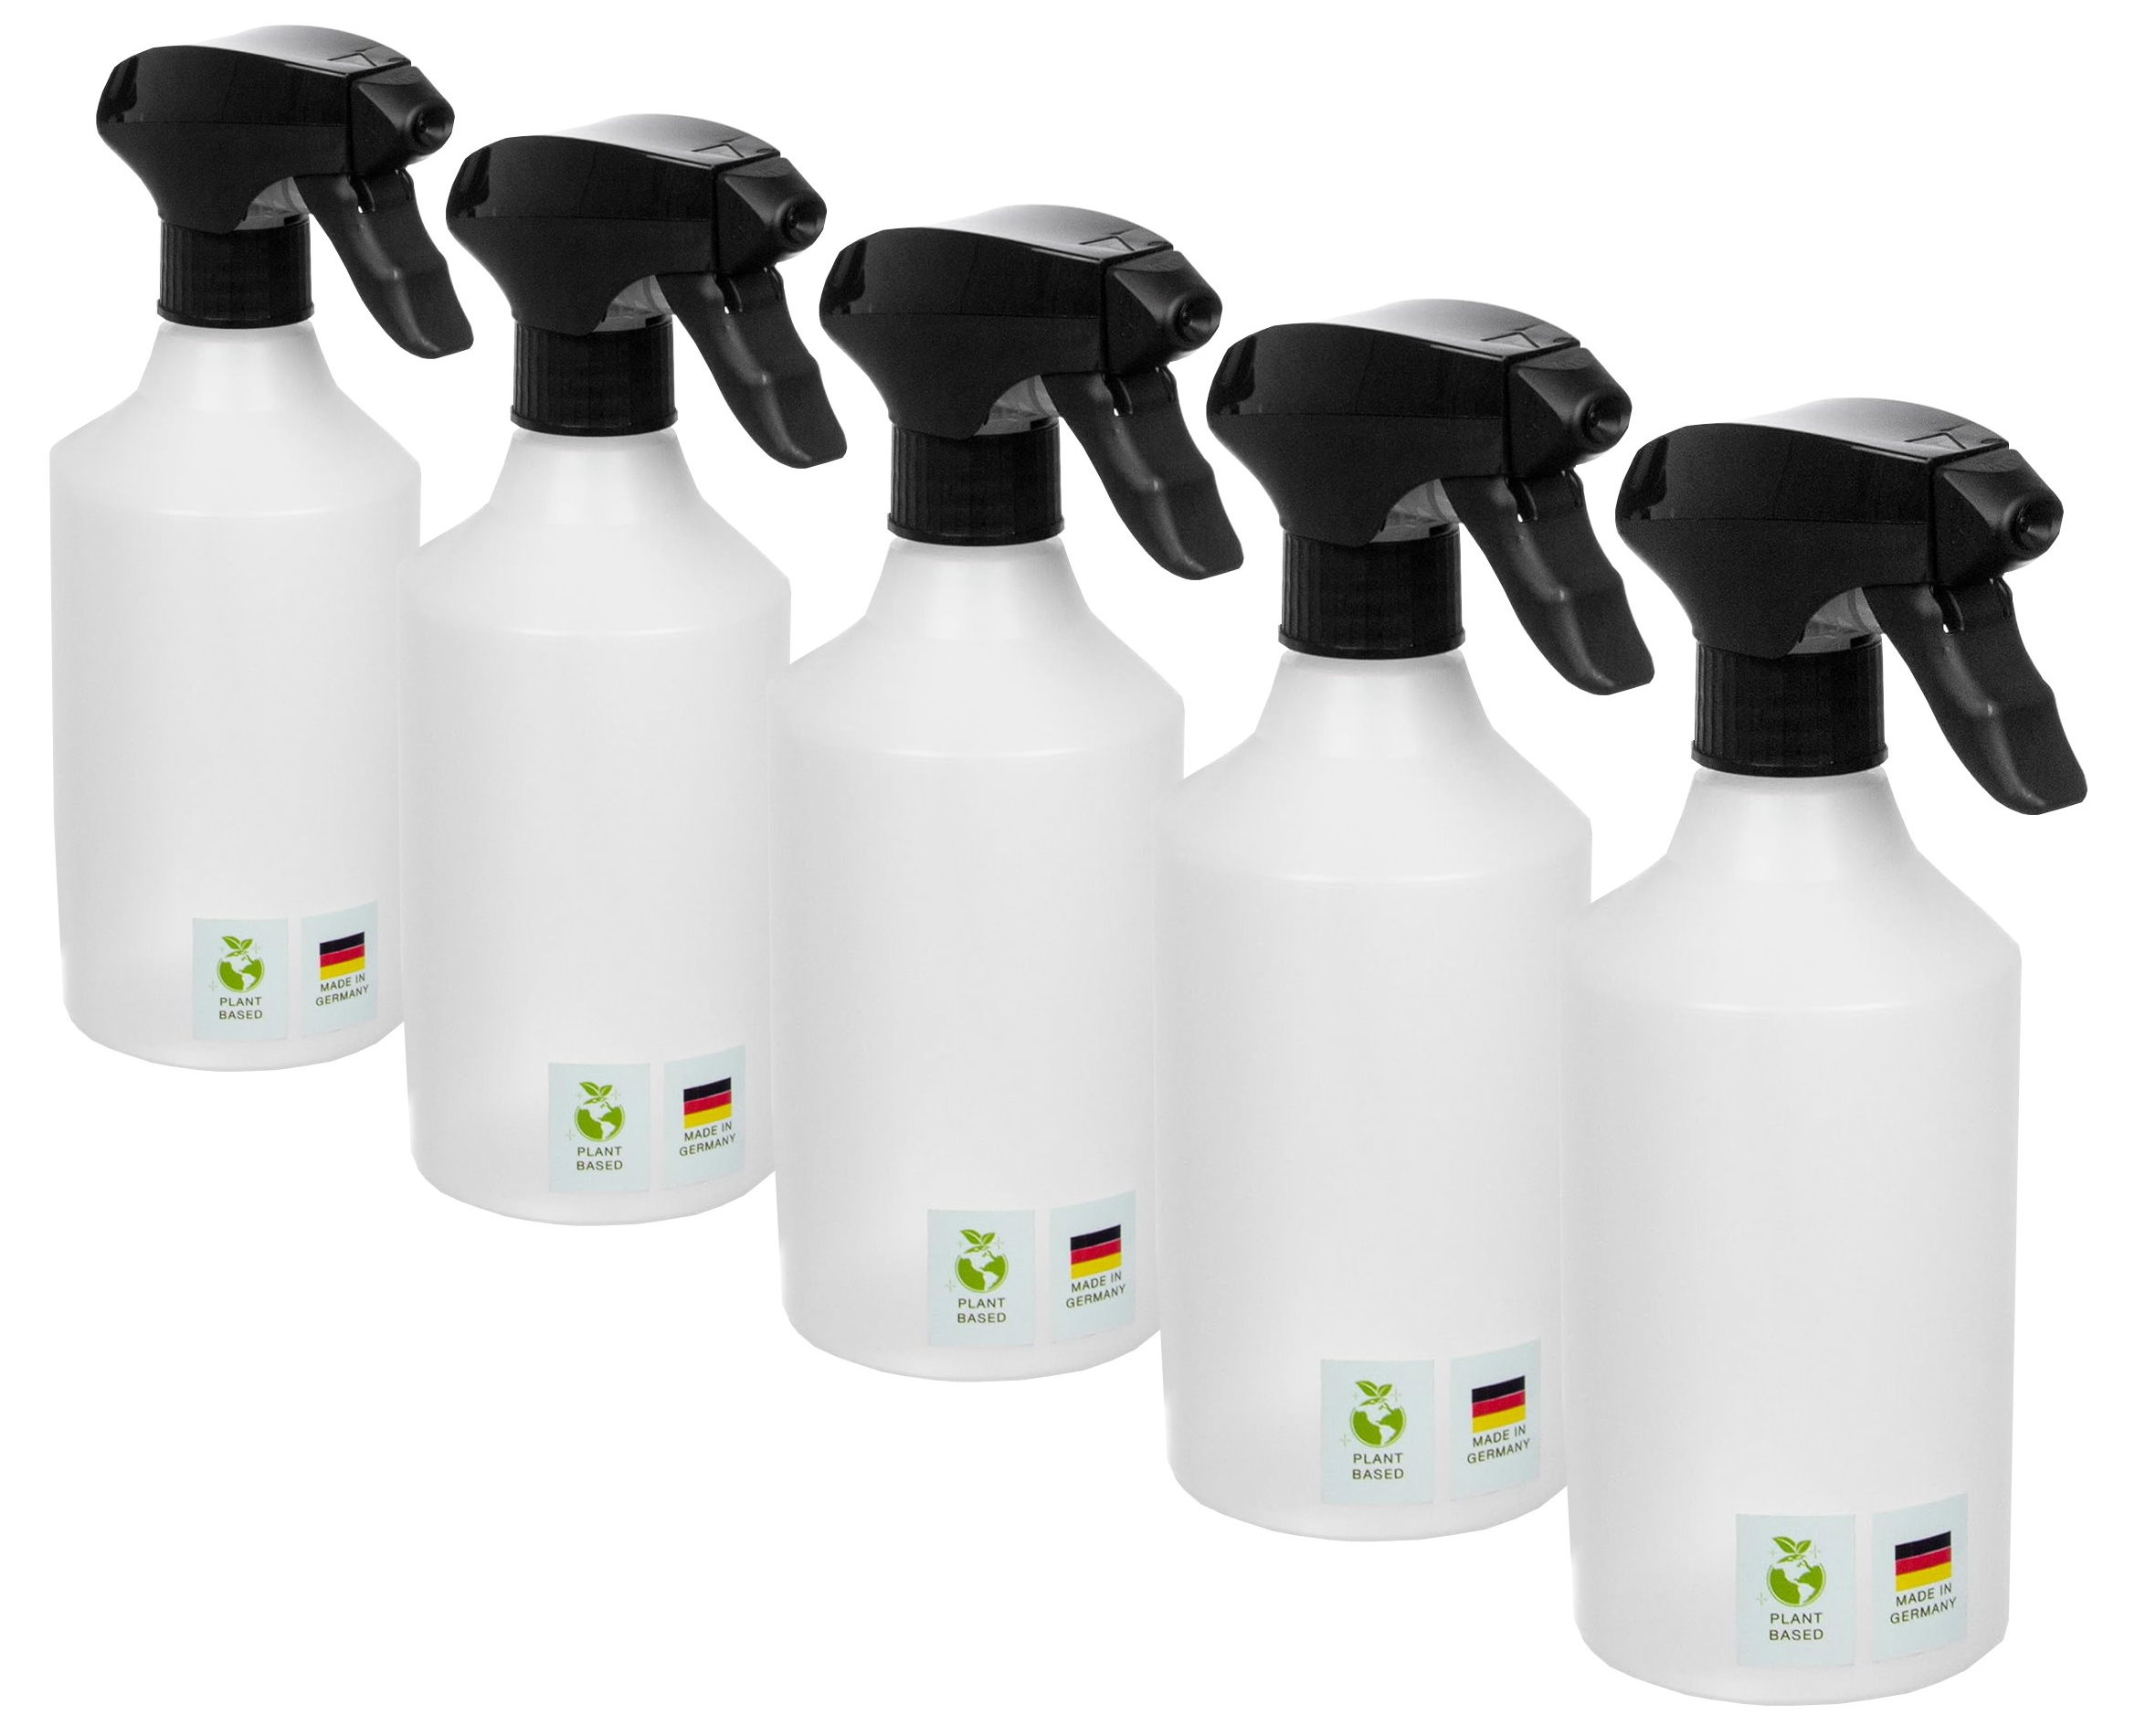 AP Sprühflaschen, 5 x 500ml, nachhaltige Herstellung aus Green-PE